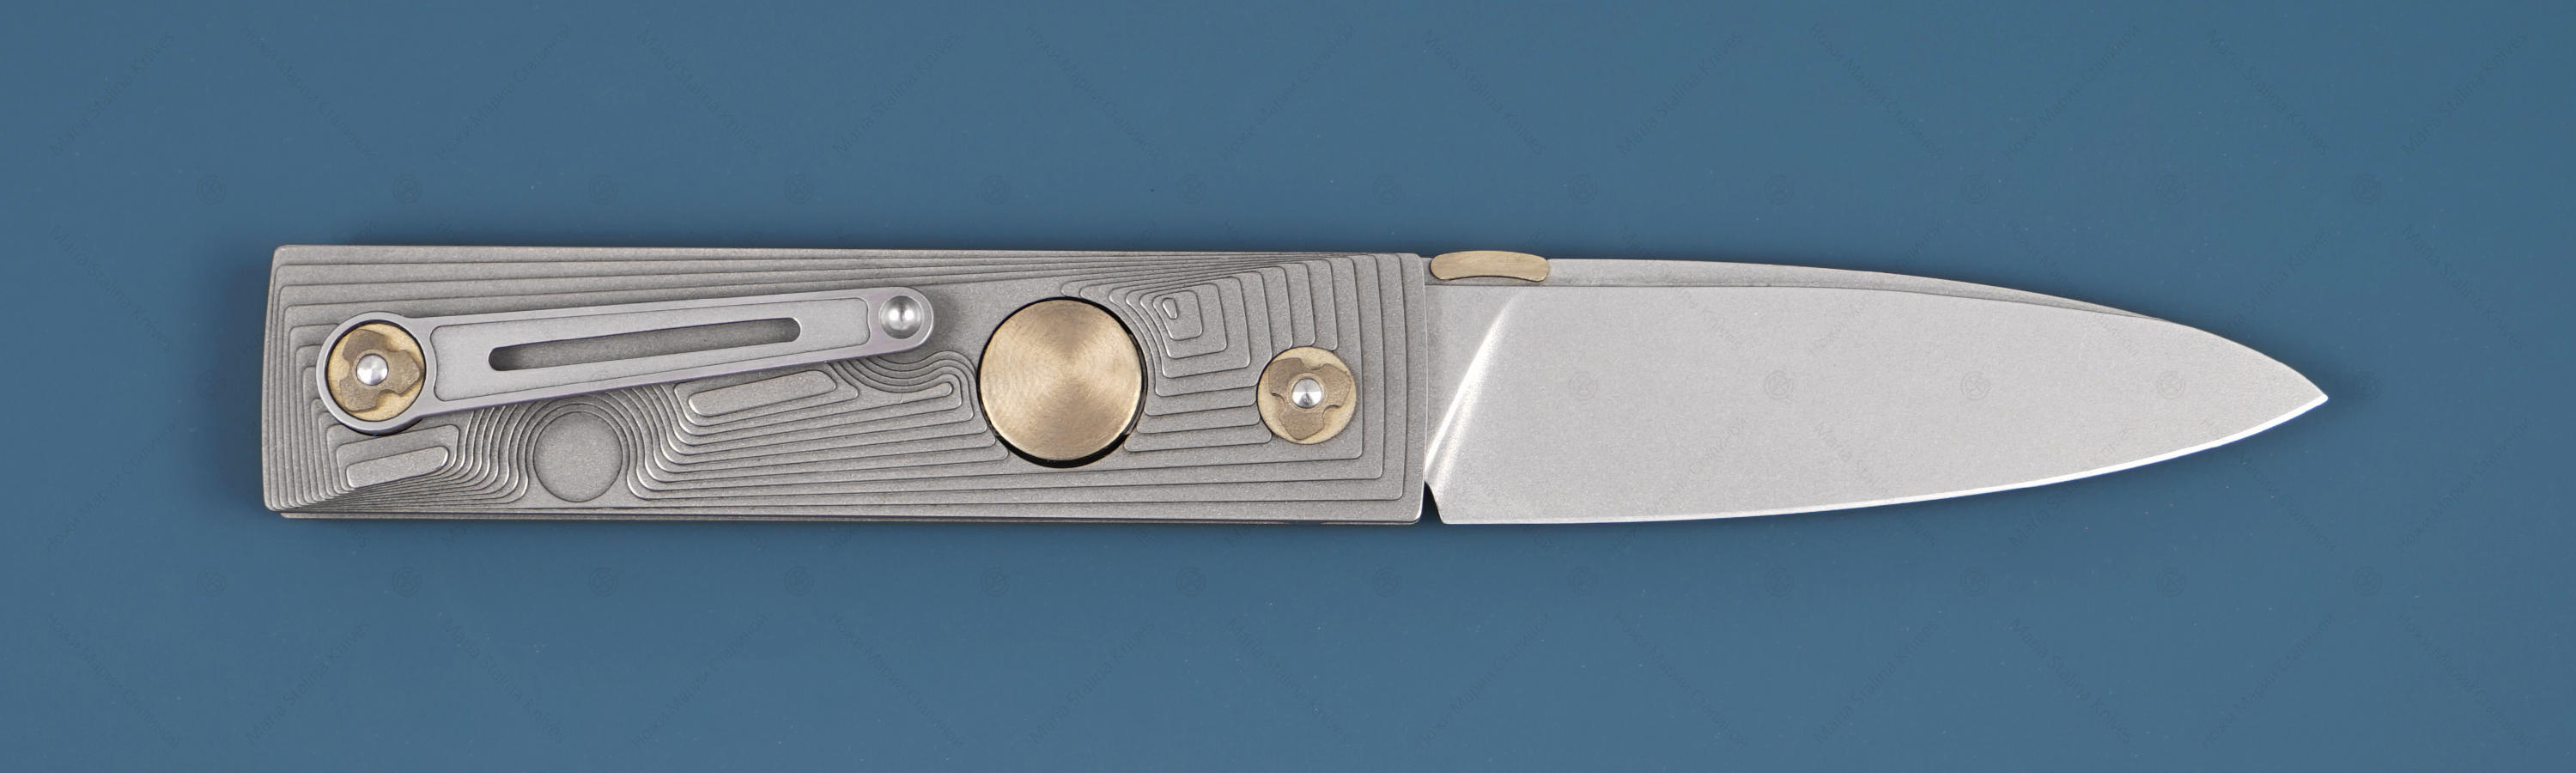 Клинок ножа из стали RWL-34